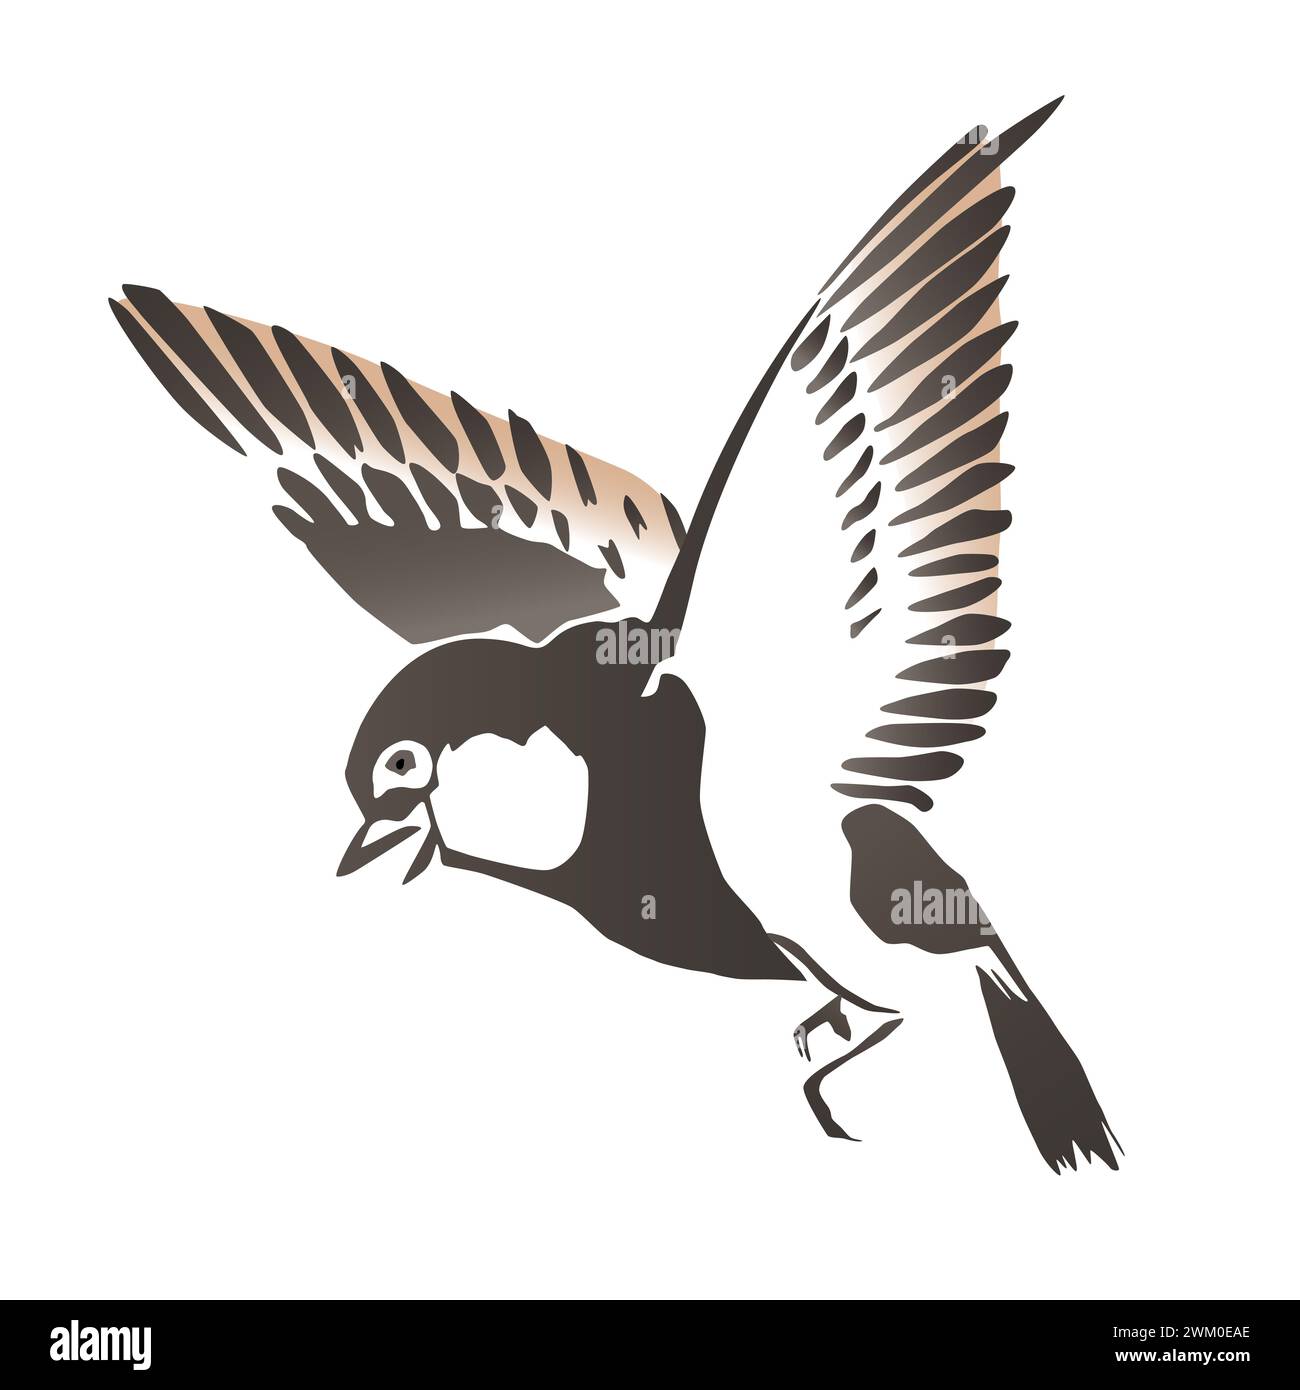 Piccolo uccello in avvicinamento, nello stile della pittura ad acquerello giapponese con ampi tratti di pennello. Uccello con le ali allungate, che si tiene in aria. Foto Stock